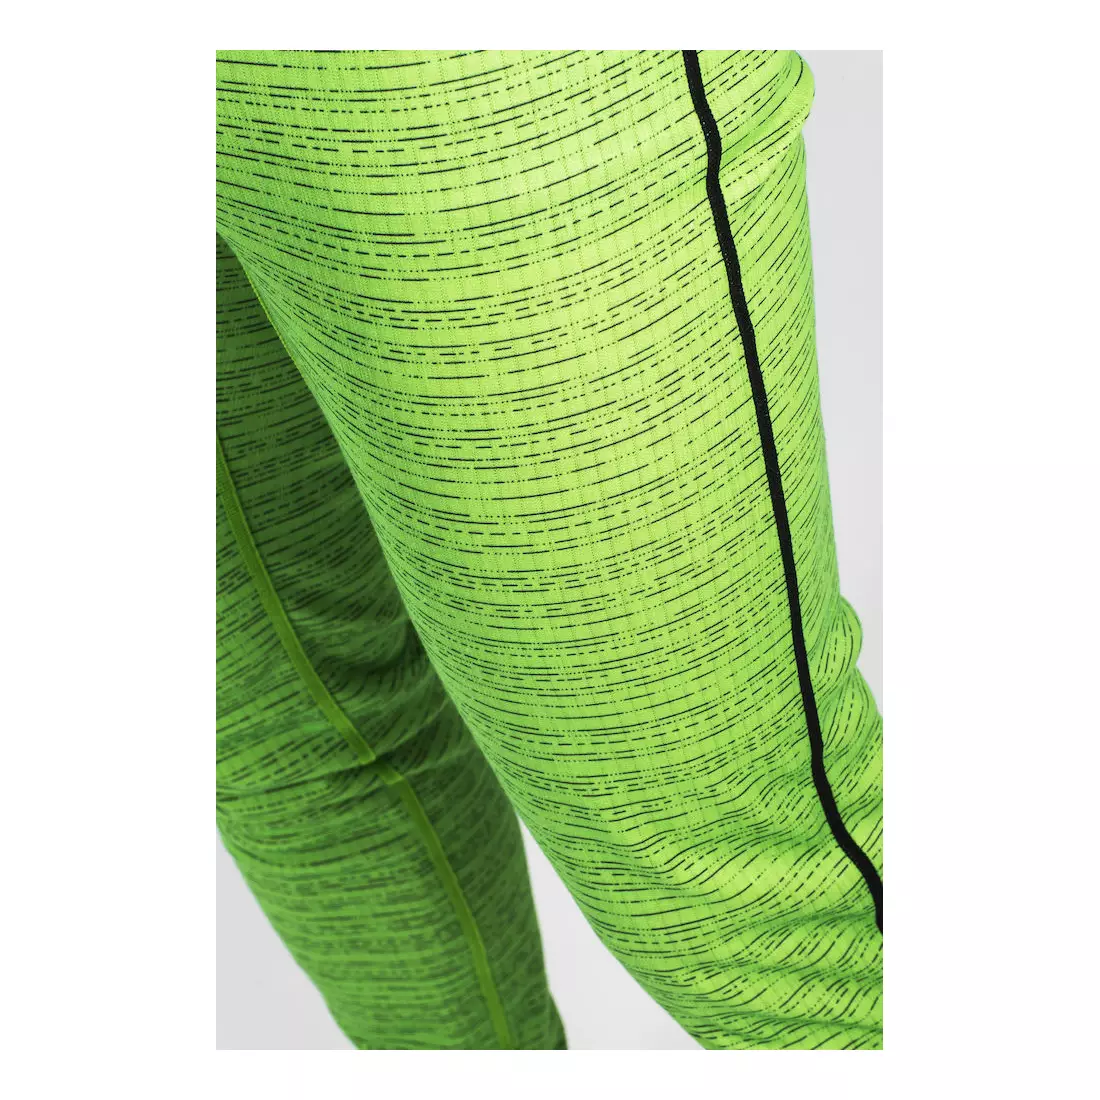 Pantaloni termici funcționali CRAFT MIX &amp; MATCH pentru bărbați 1904511-2025